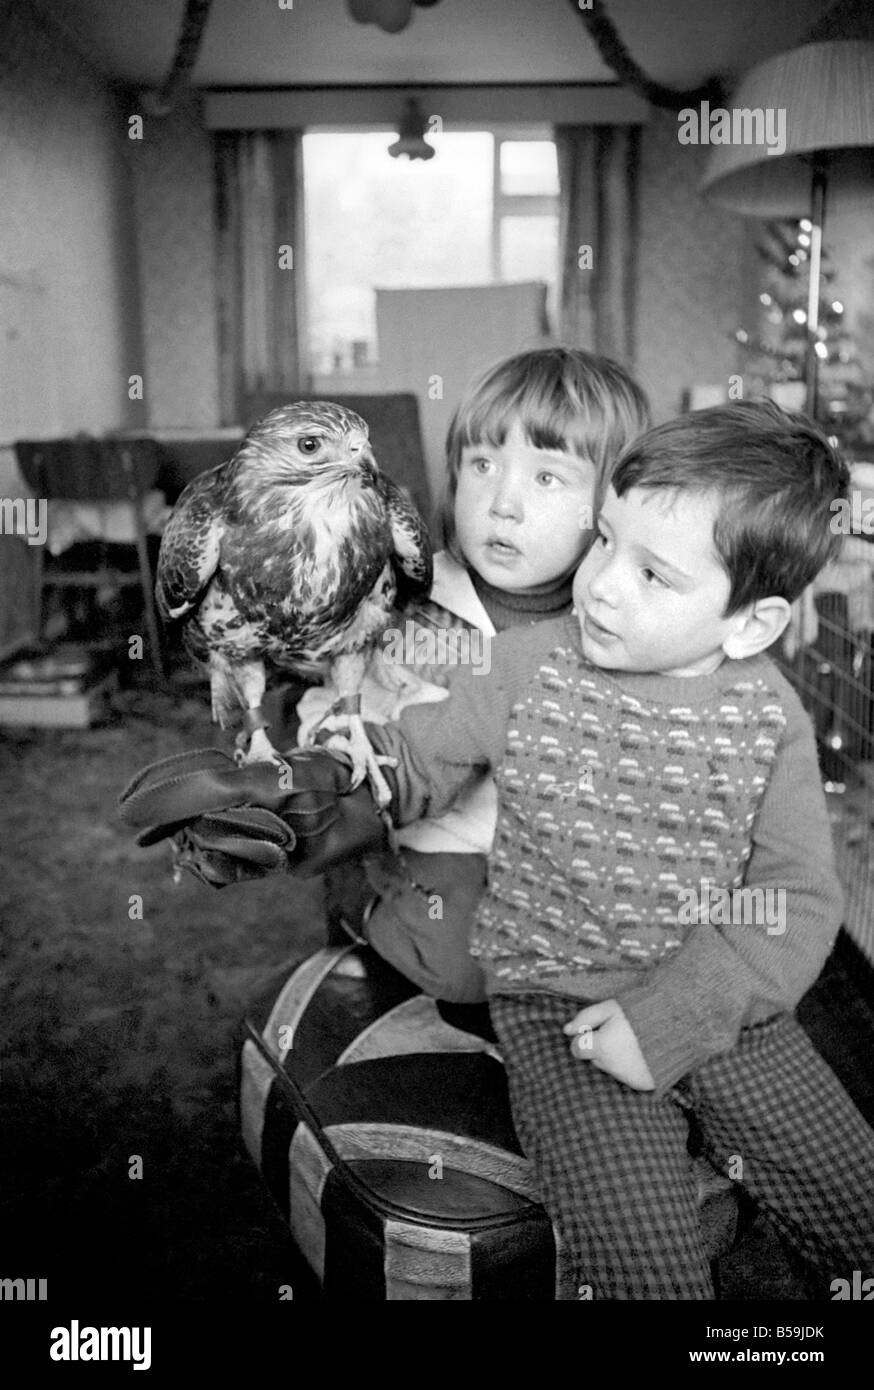 Animal/pet/inhabituelle. Les enfants avec Buzzard. Décembre 1970 71-00012-002 Banque D'Images